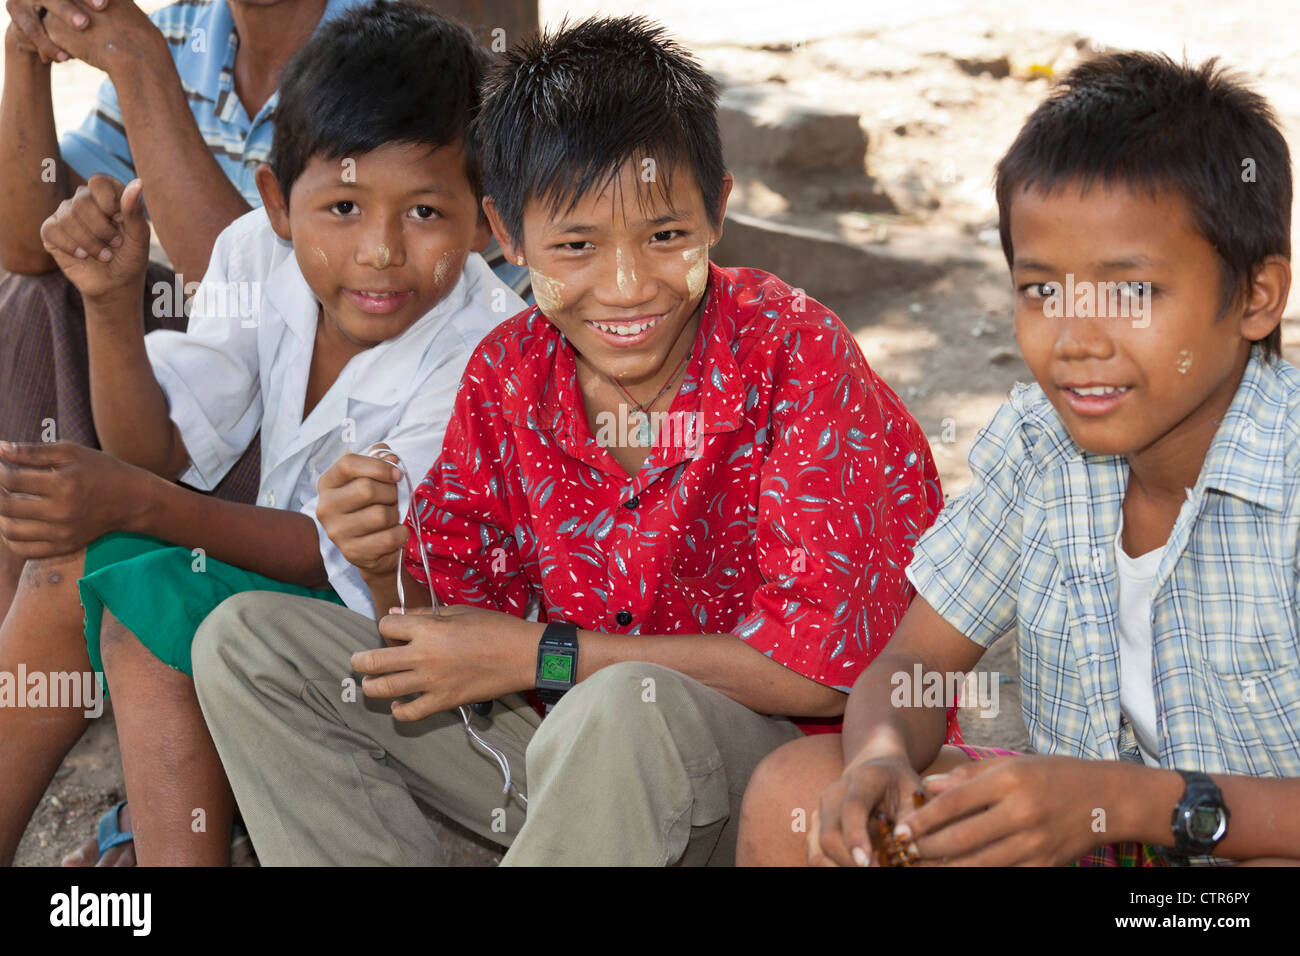 Young Burmese boys, Yangon, Myanmar Stock Photo - Alamy